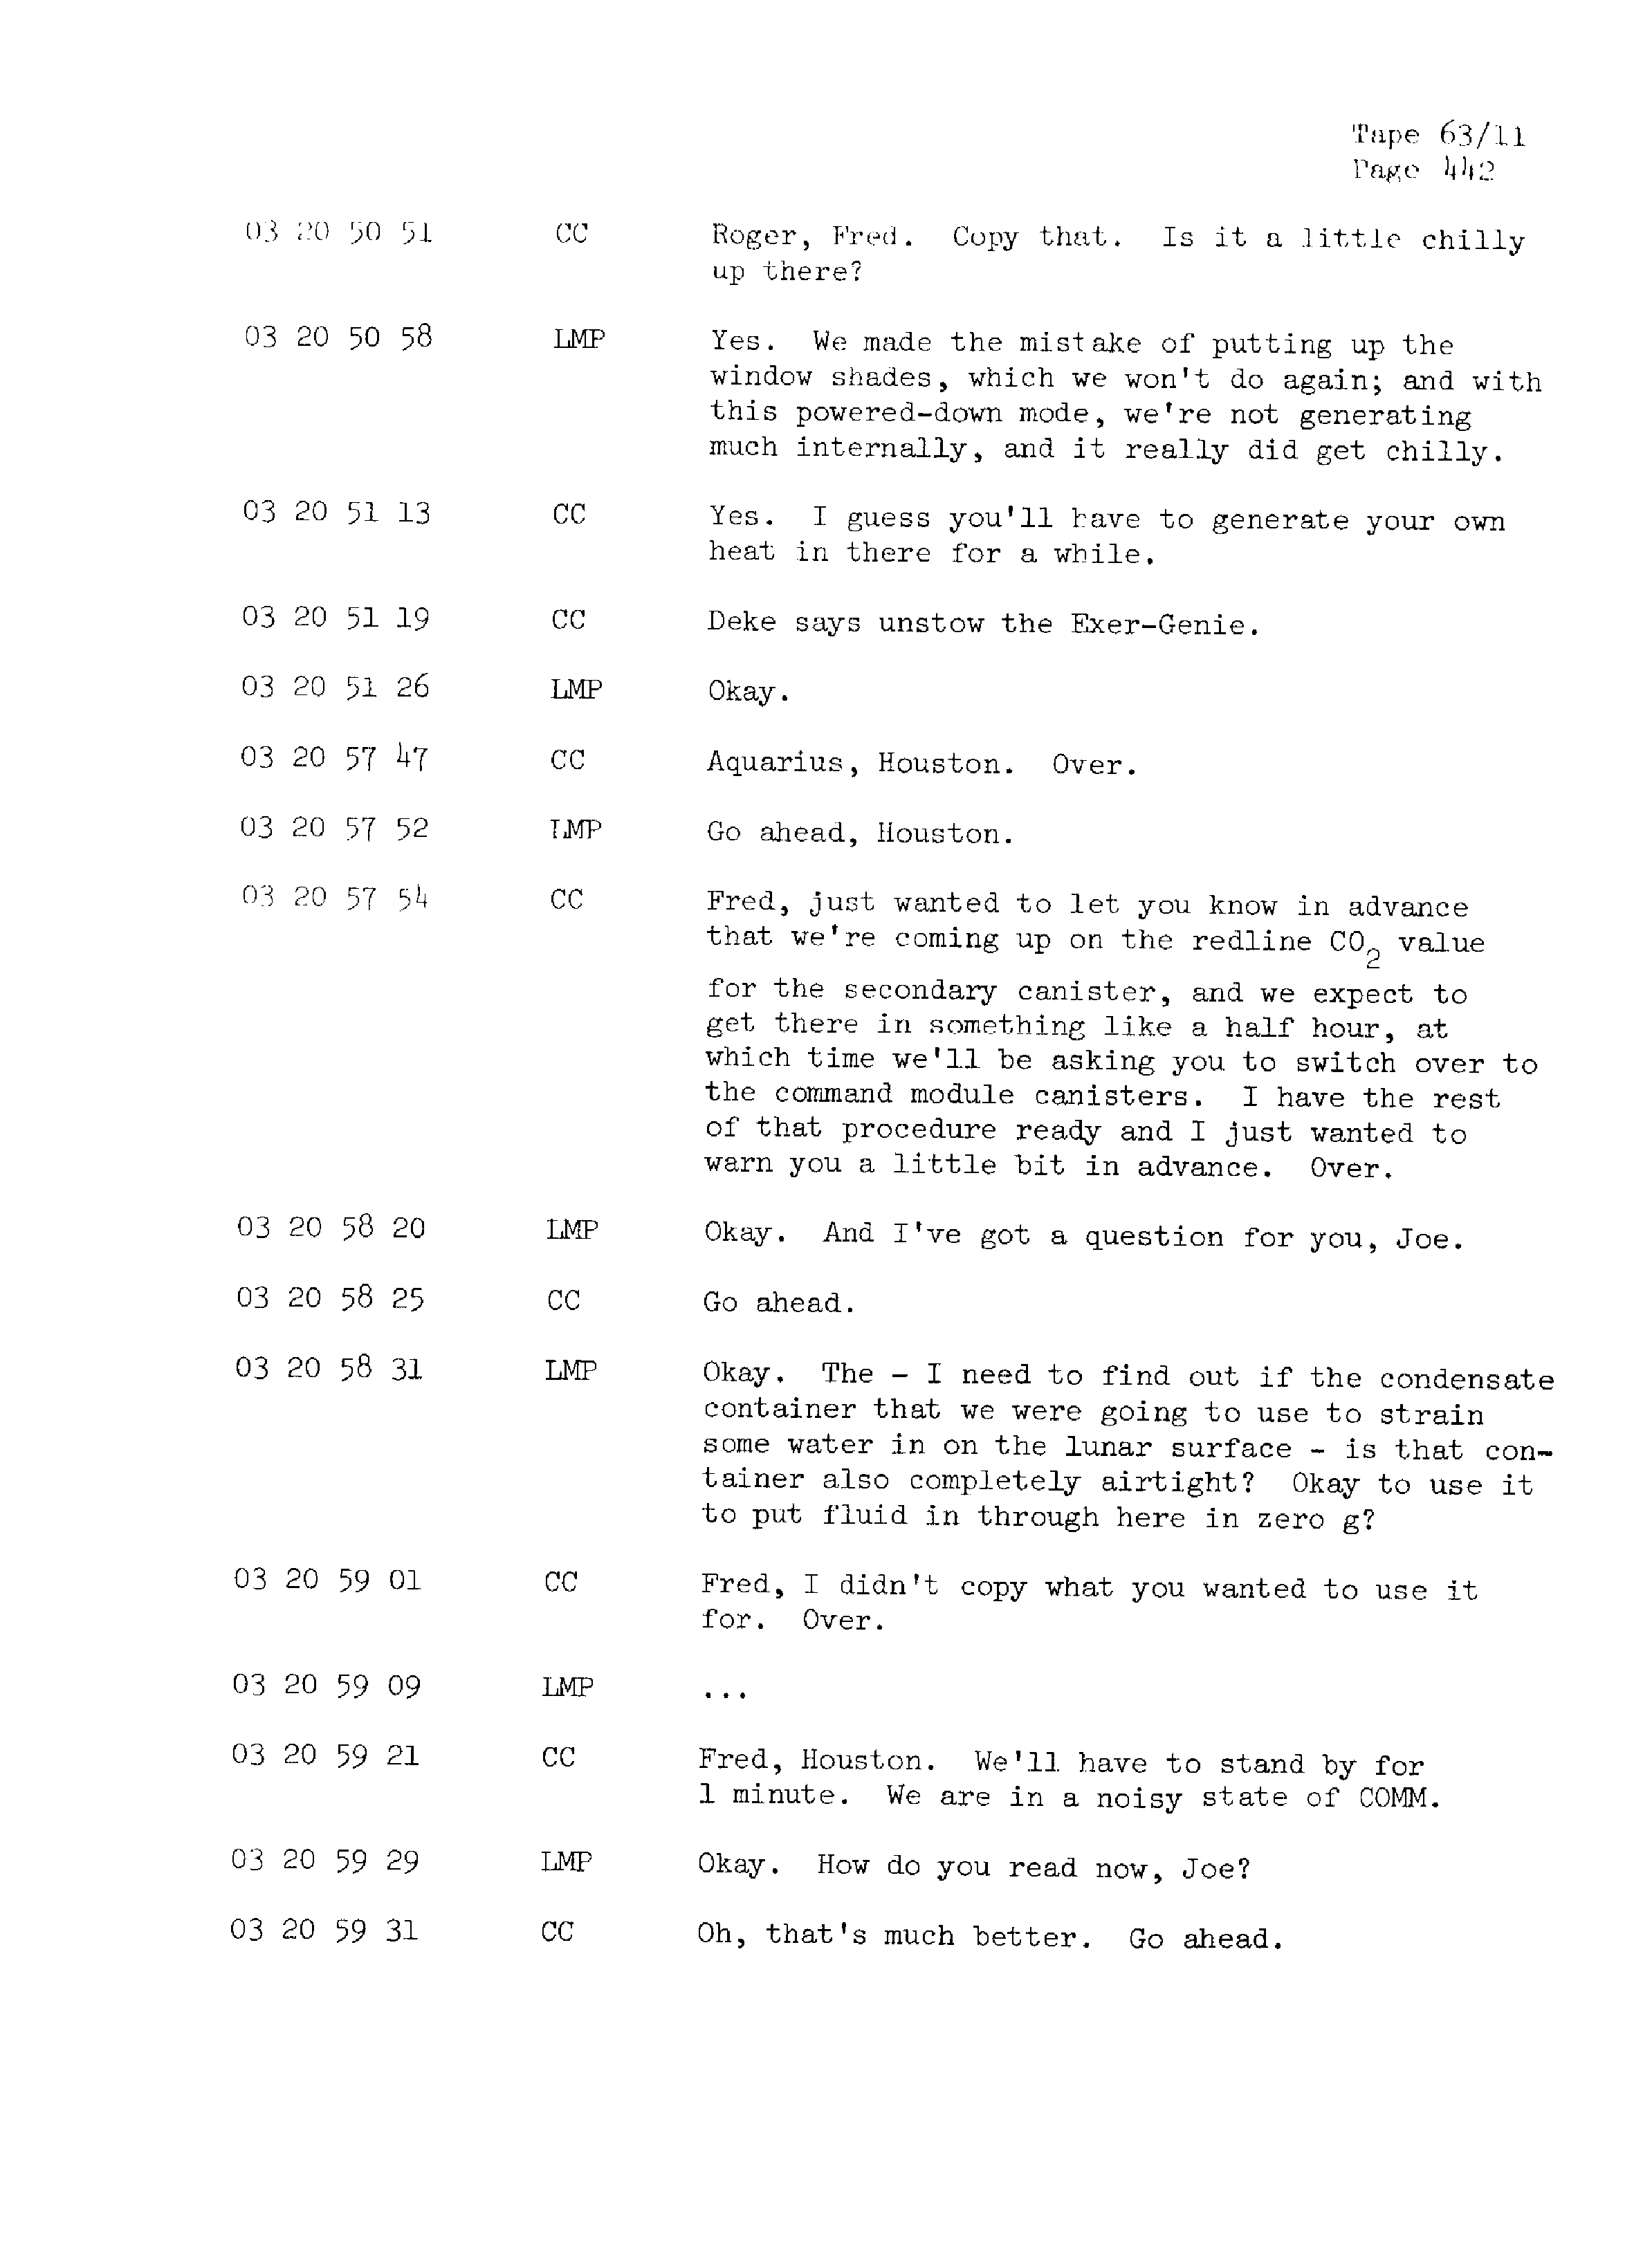 Page 449 of Apollo 13’s original transcript